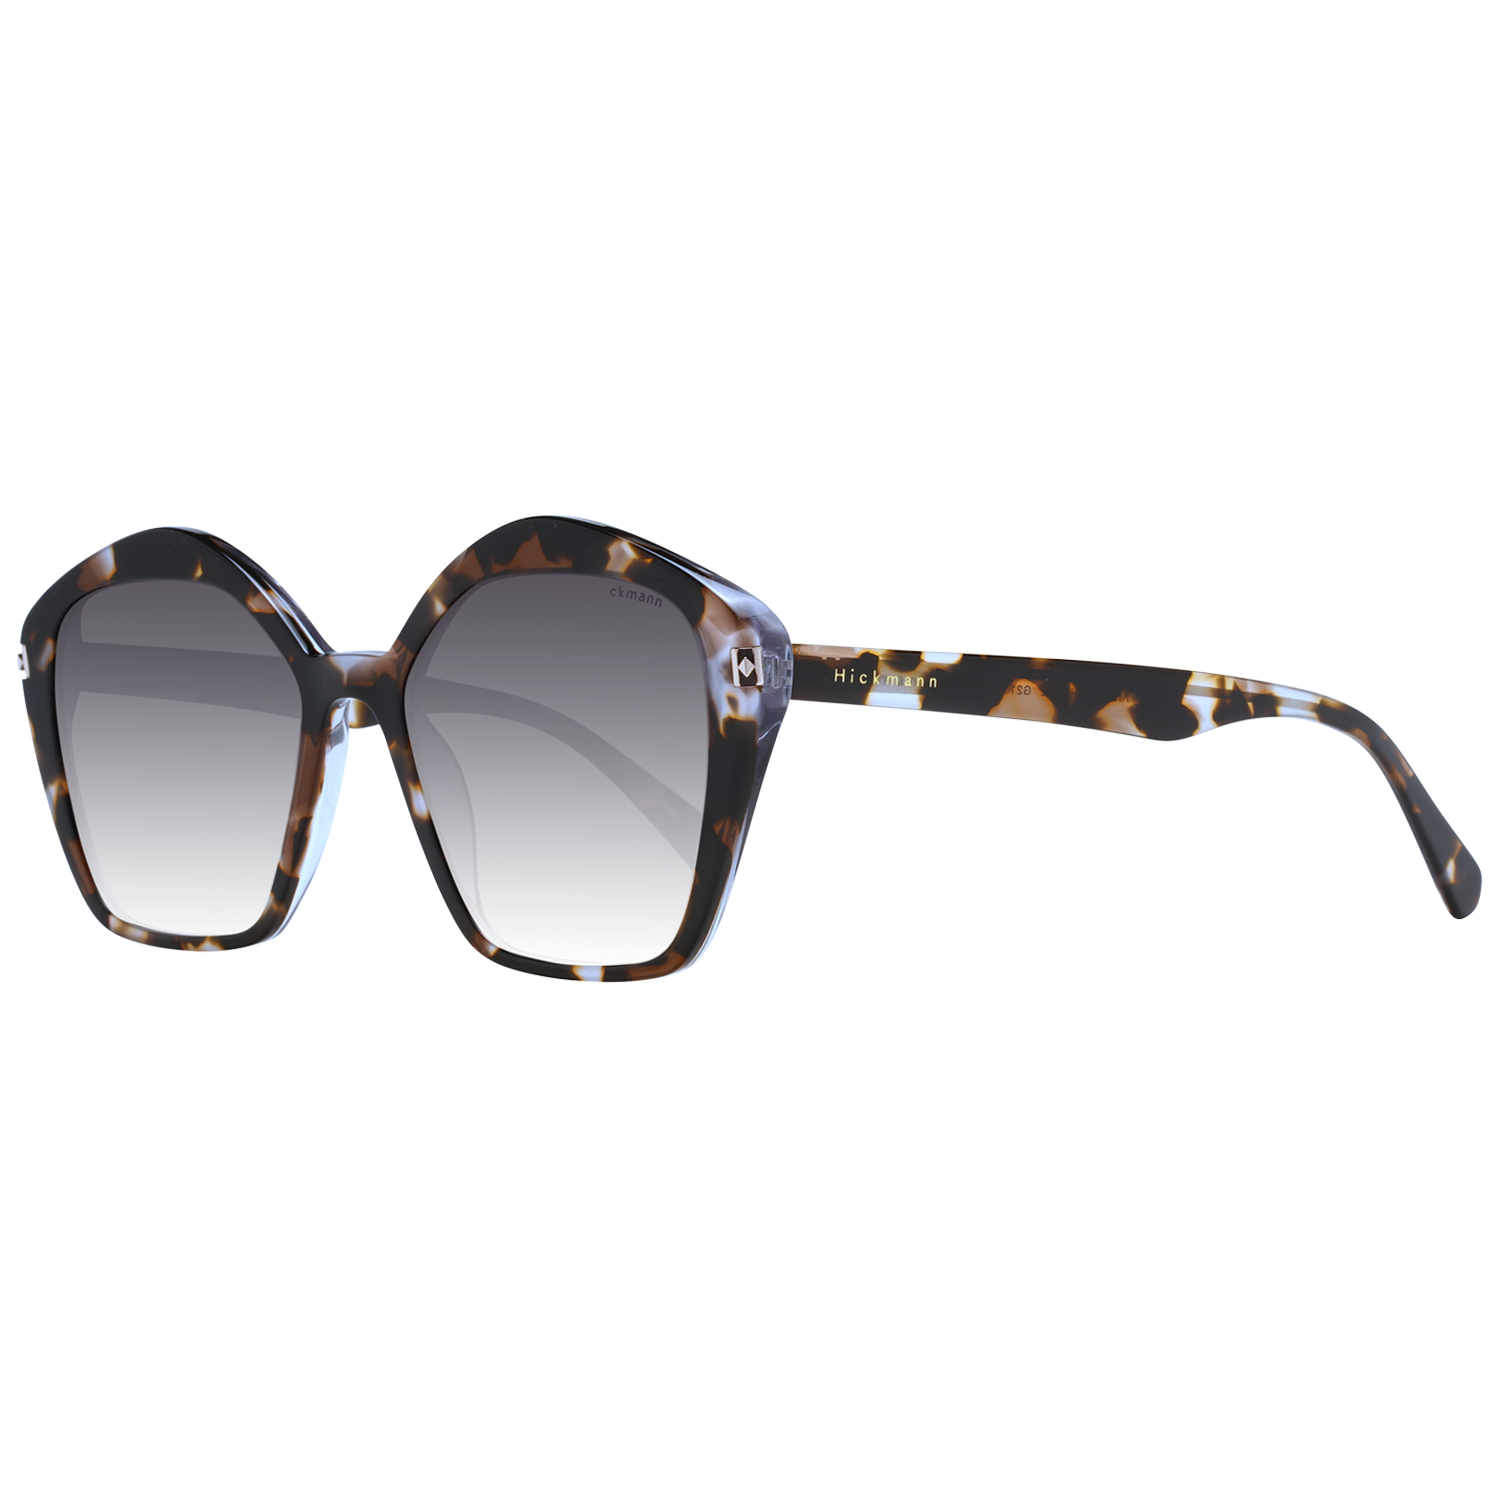 Dámské sluneční brýle Ana Hickmann HI9152 G21 54